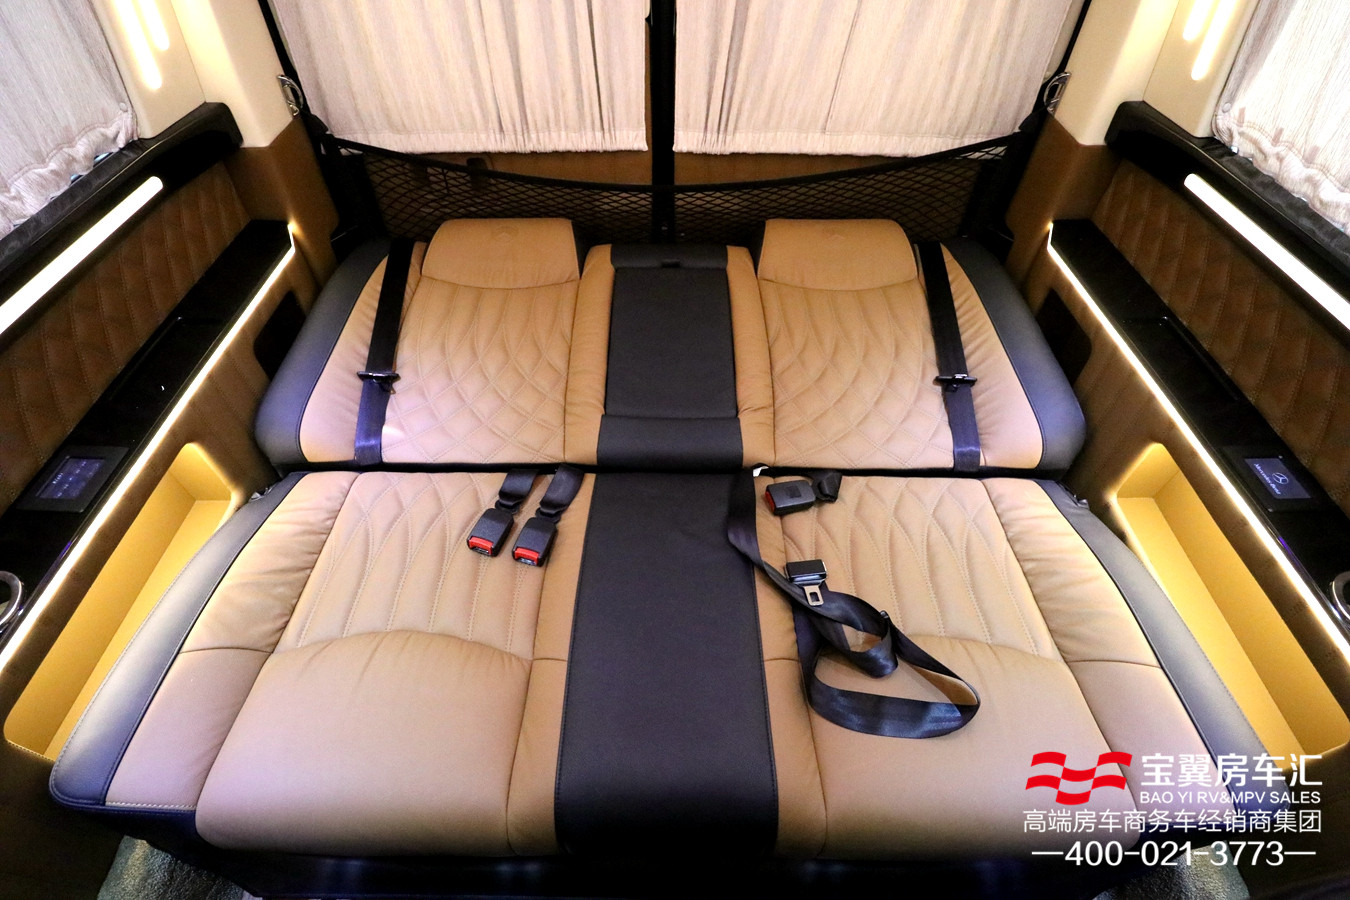 三排电动沙发三连座一键放平为沙发床,为您提供最舒适的乘车享受